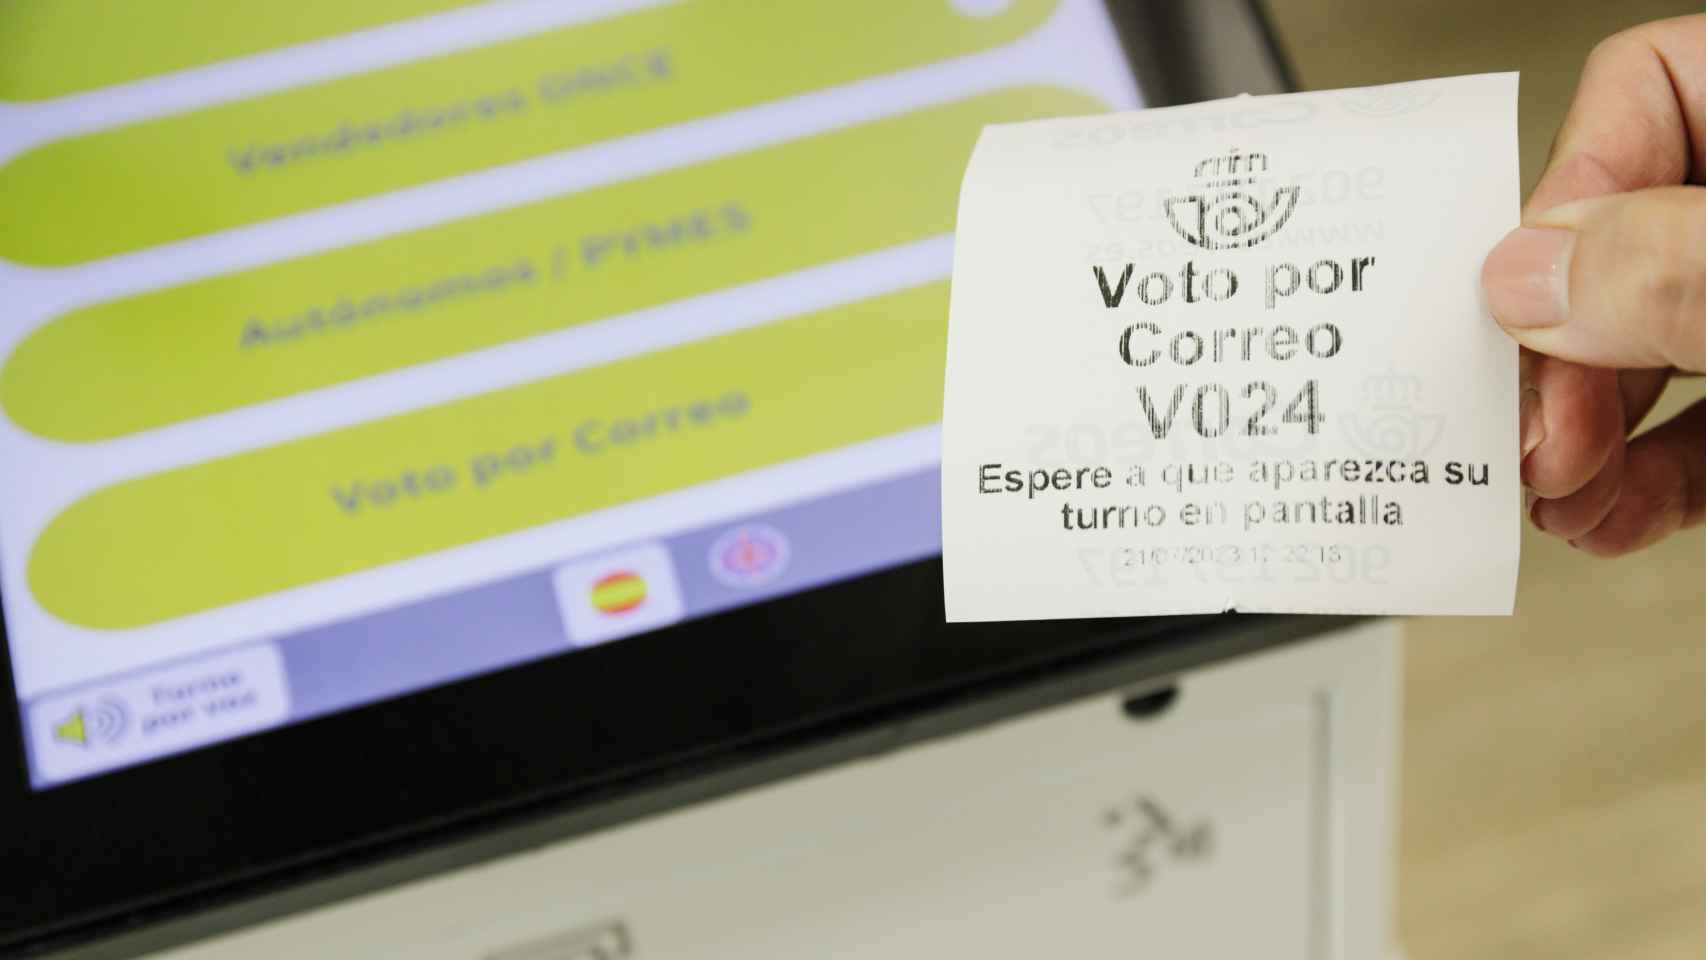 Un ticket del turno para pedir voto por correo